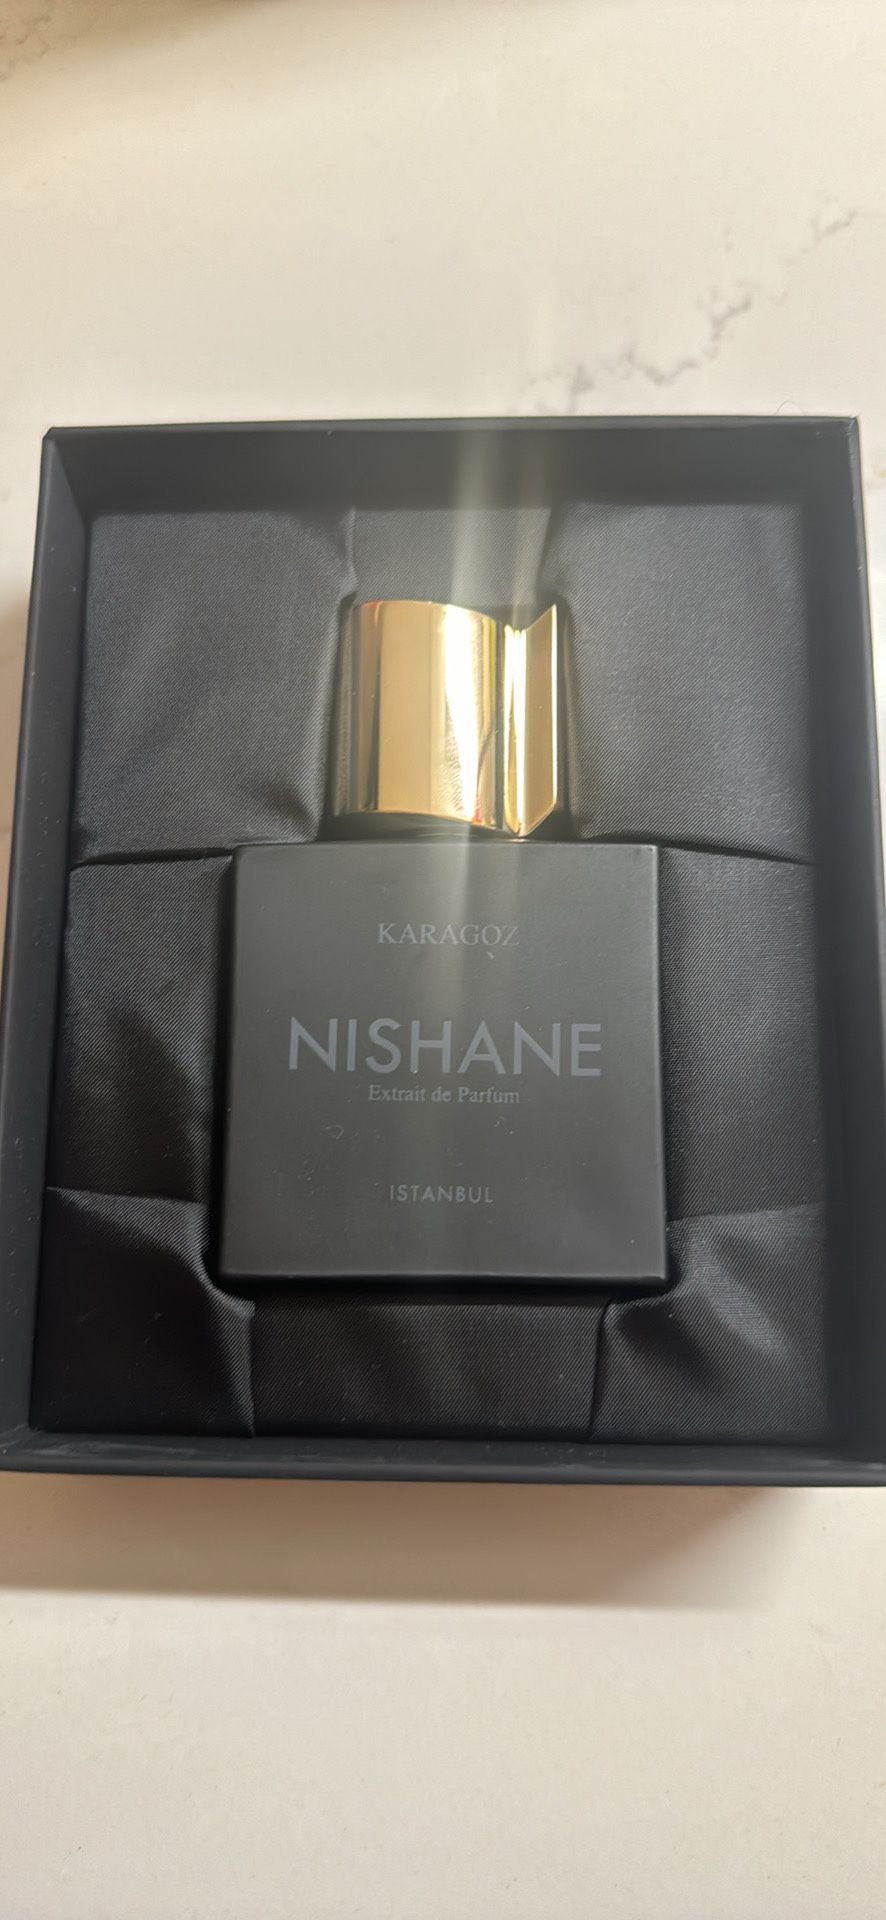 Perfume Nishane Karagoz